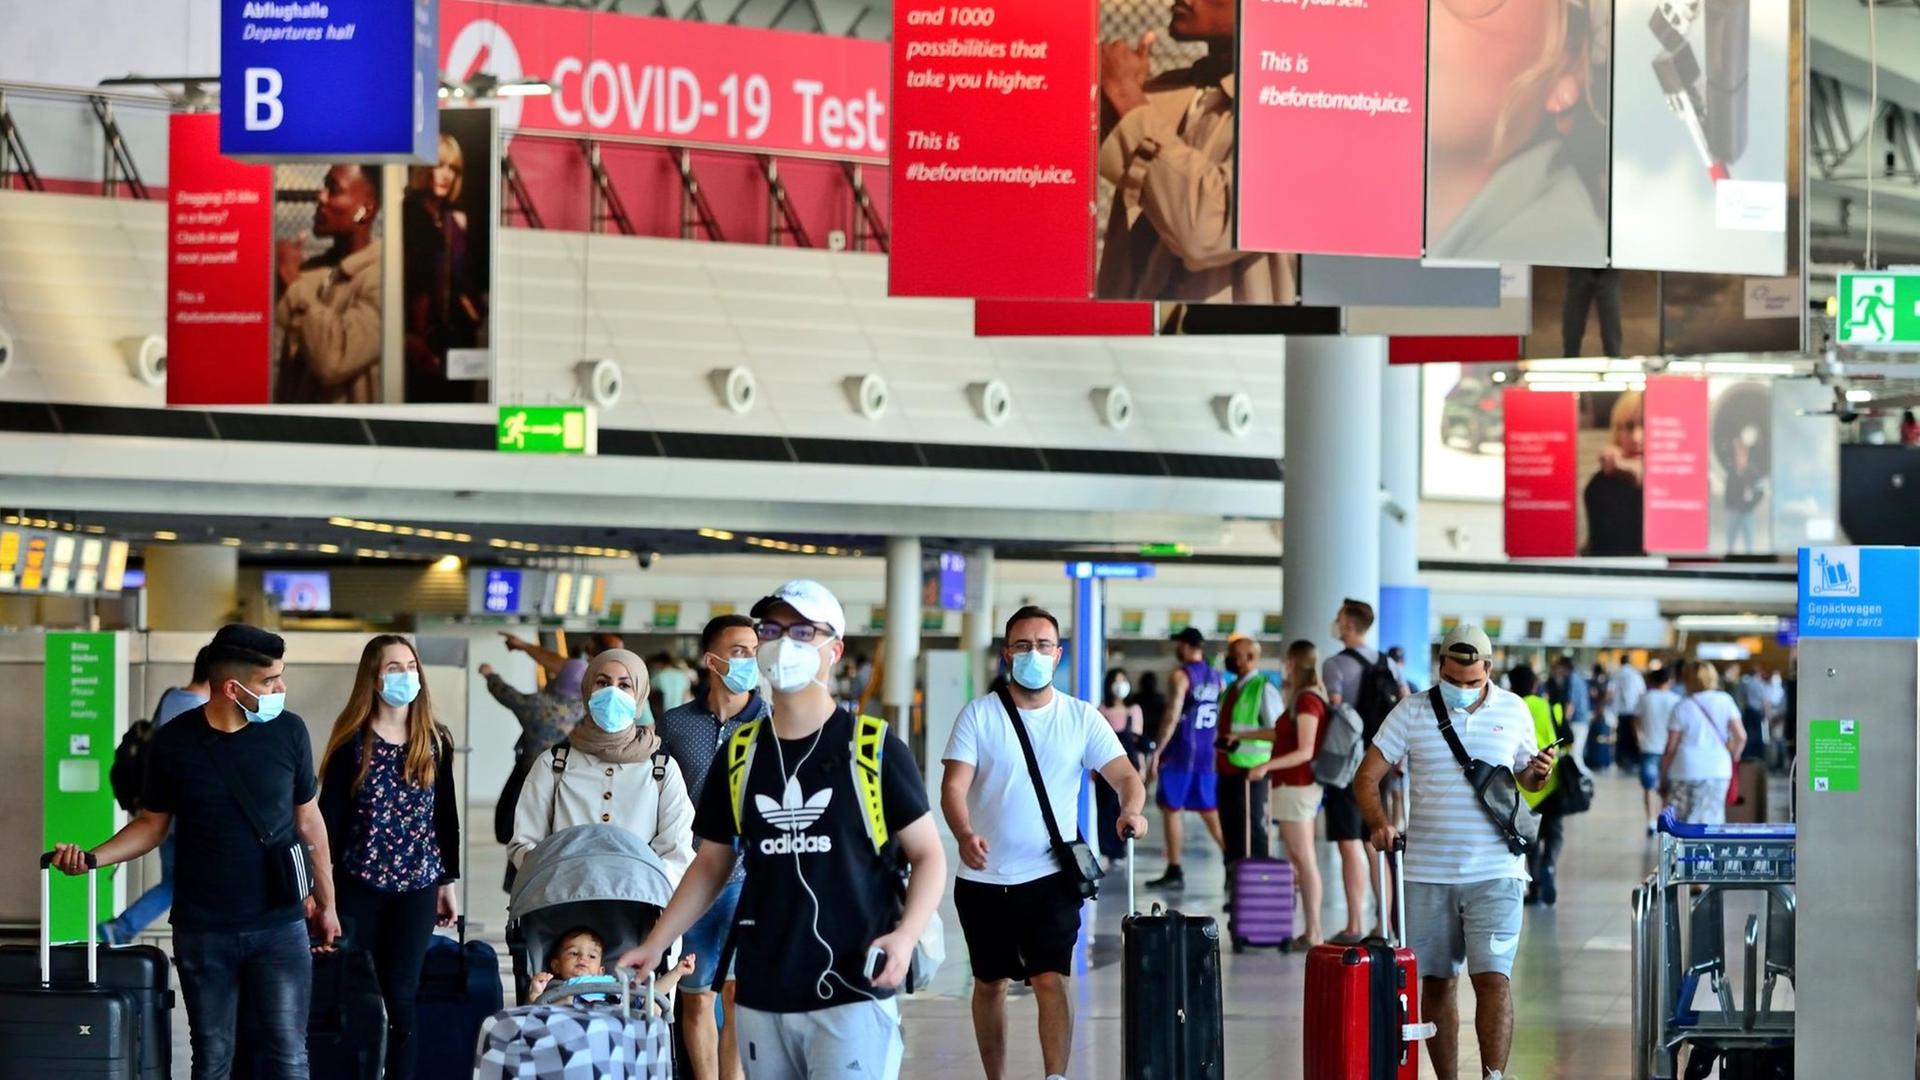 Reisende am Flughafen Frankfurt, im Hintergrund ist ein Schild zu sehen mit der Aufschrift "Covid-19-Test".